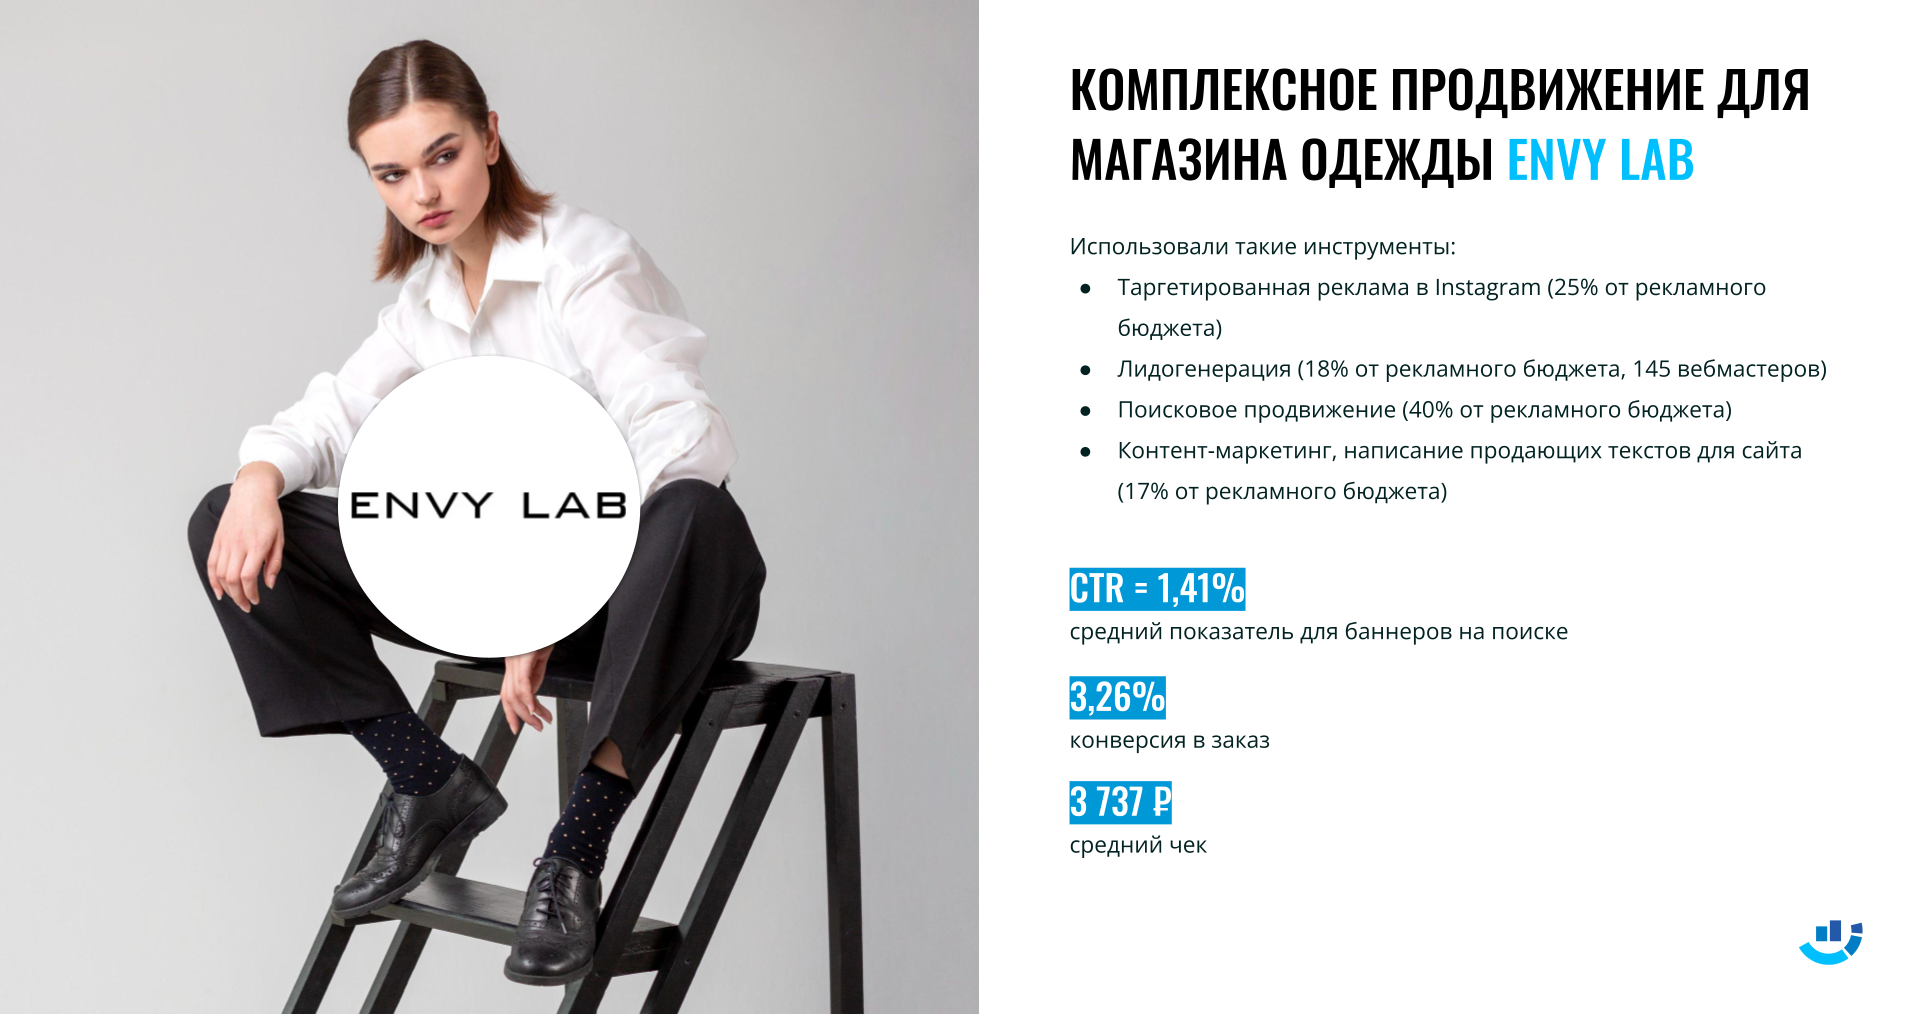 Кейс интернет-маркетинг для магазина мужской одежды Envy lab